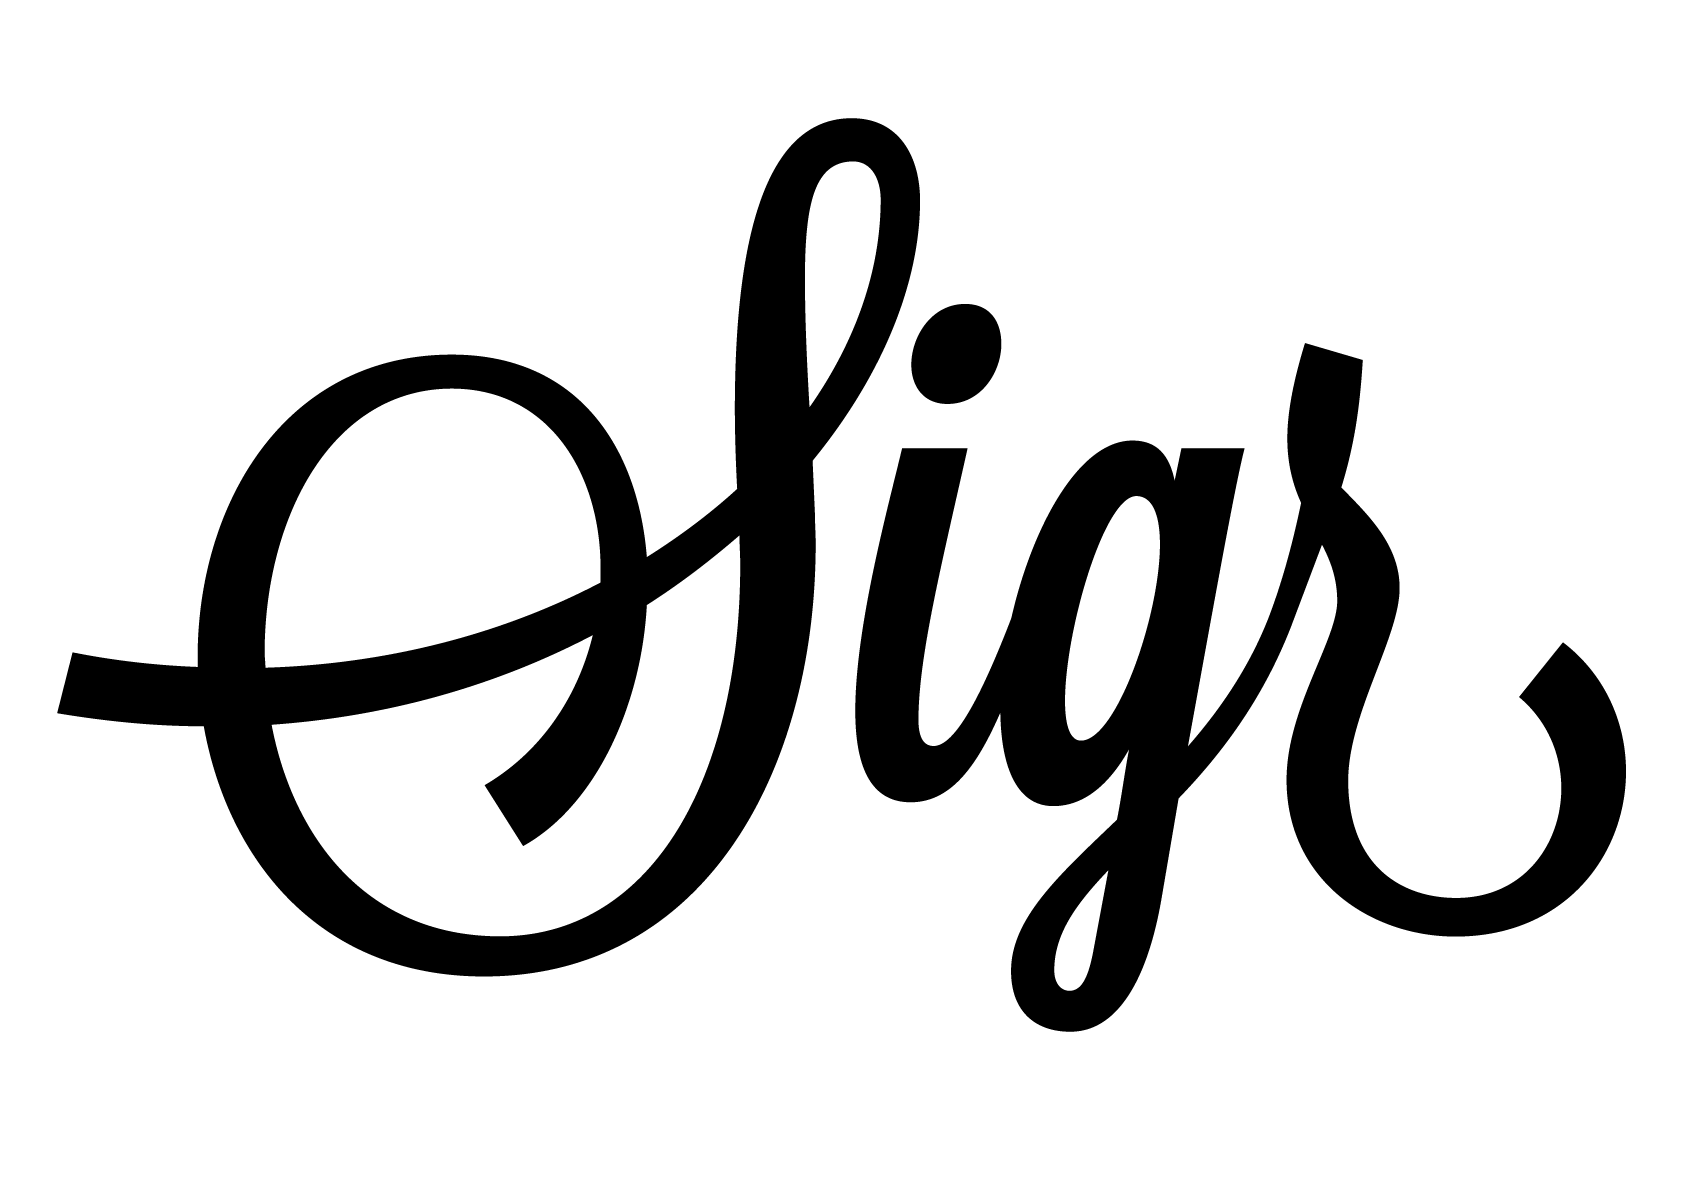 Sigr-logo-1200.png